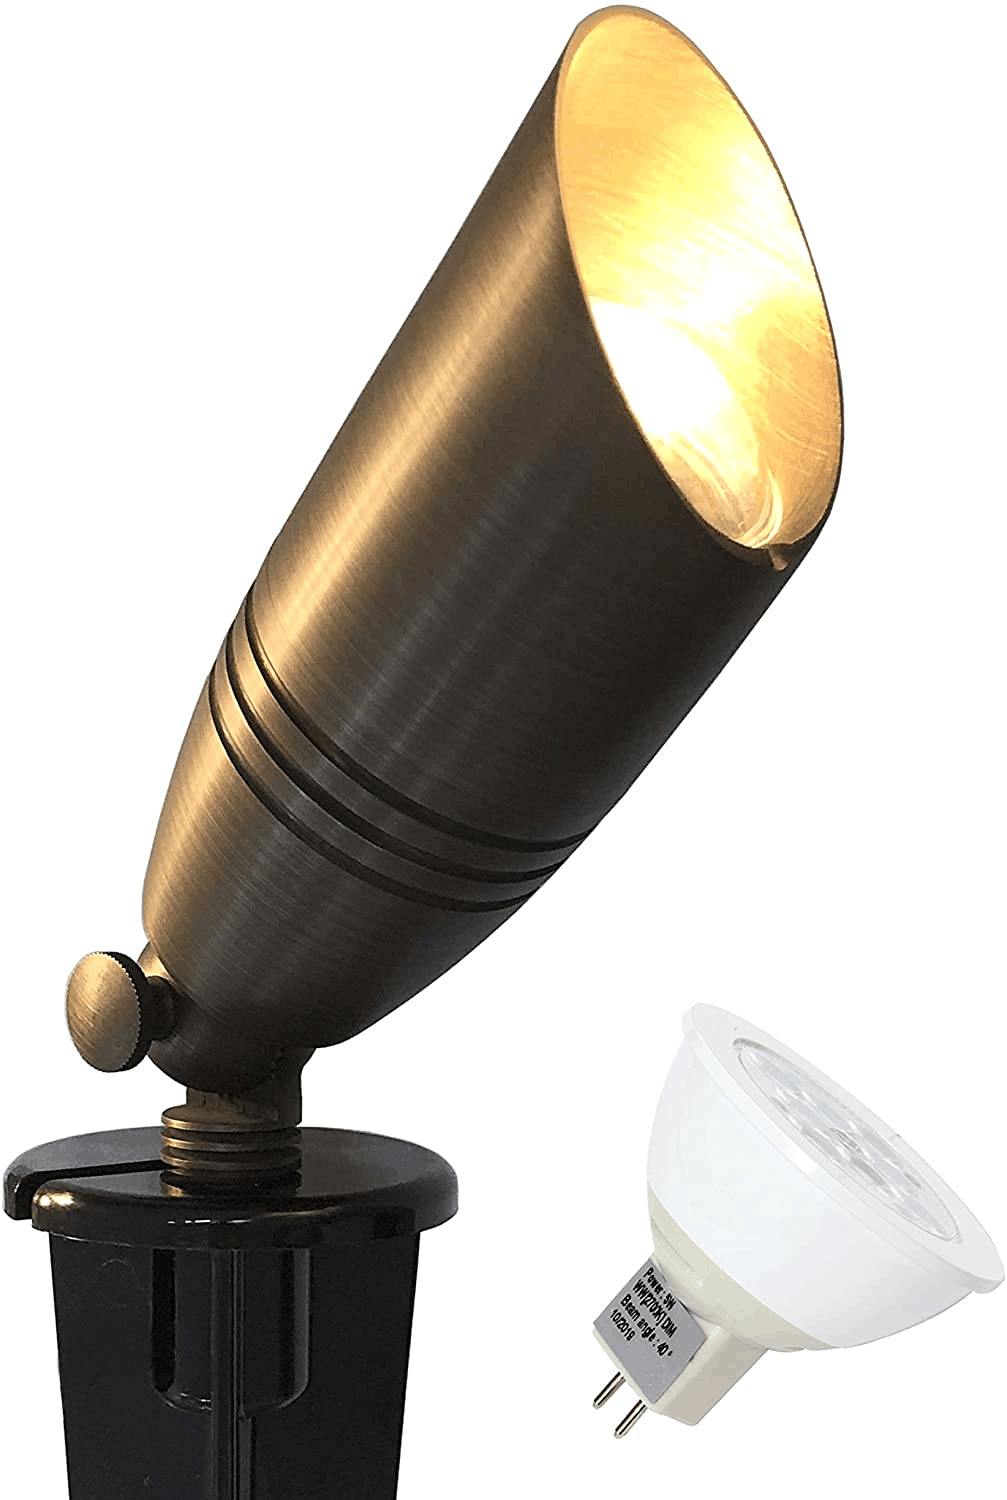 RuggedGrade Solid Brass Lyla S Series LED Landscape Light - 5W 2700K LED MR16 Bulb Included - 12V DC Low Voltage Lights 23-105